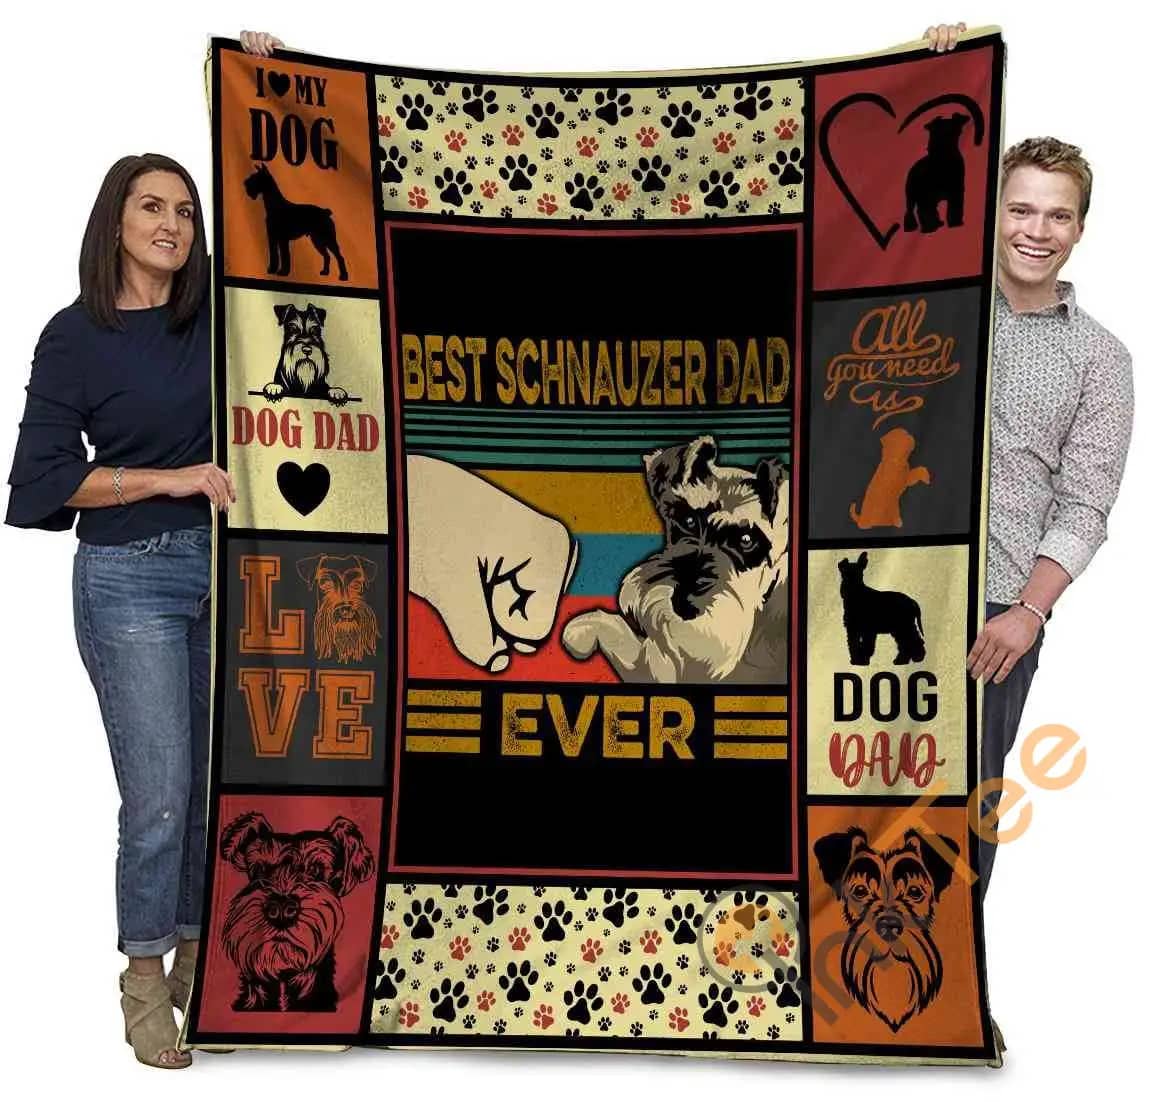 Best Schnauzer Dad Ever Schnauzer Dog Paw Bump Fit Ultra Soft Cozy Plush Fleece Blanket